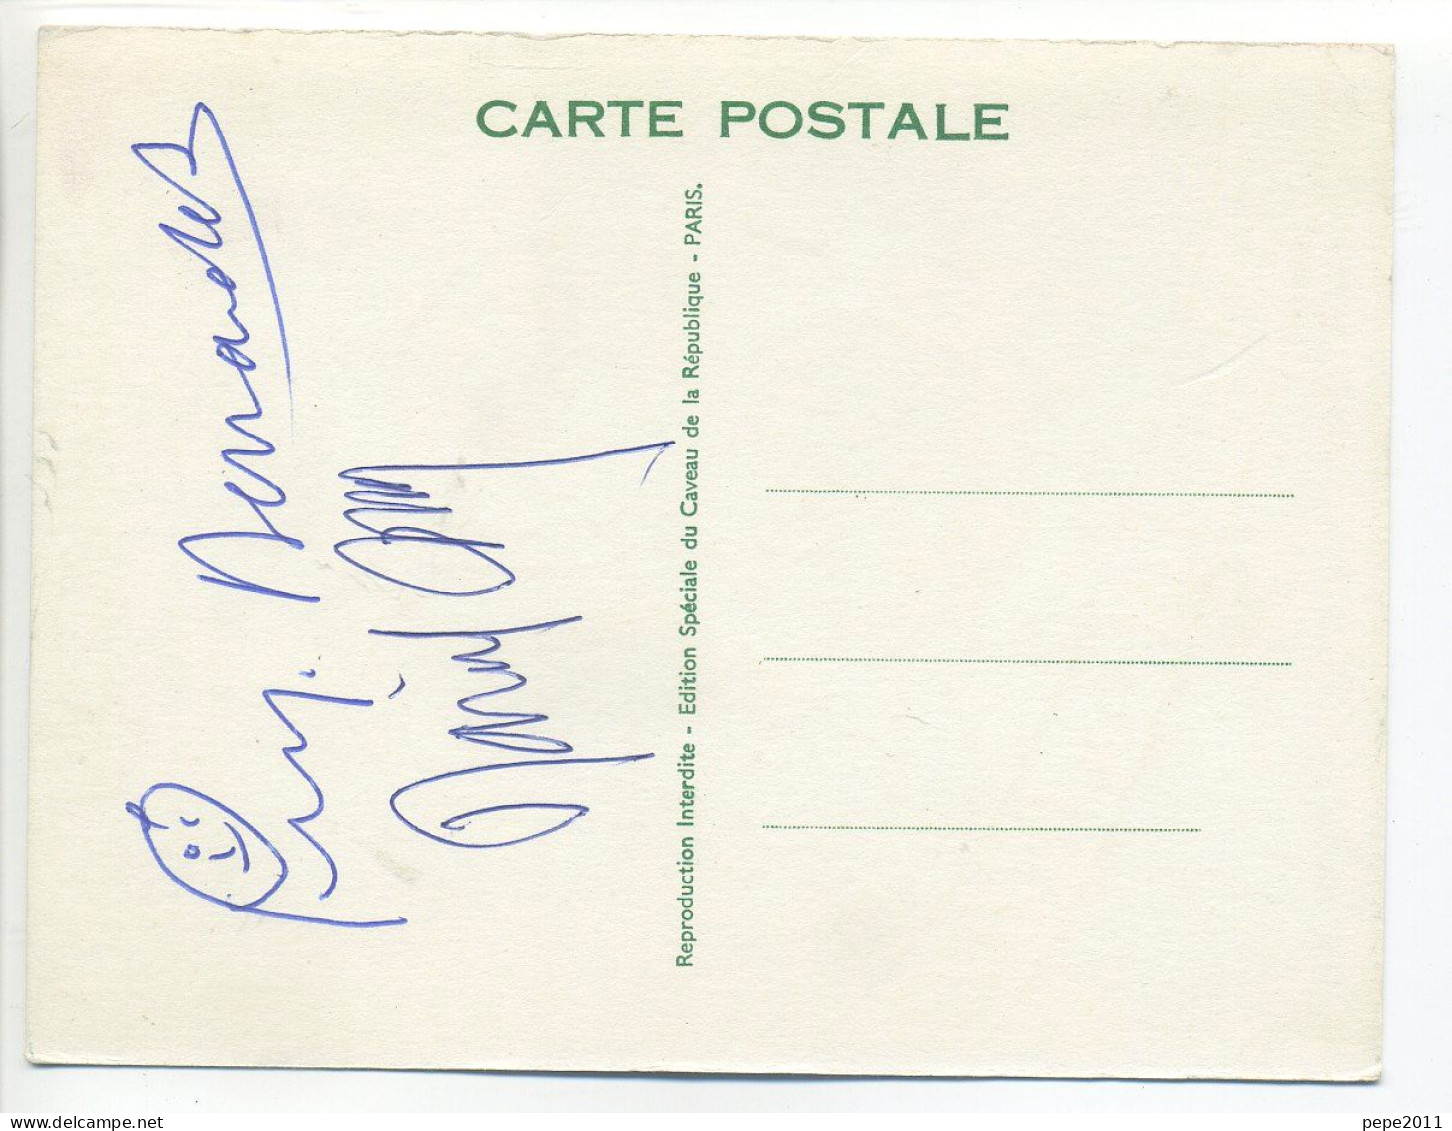 CPSM Publicitaire Illustrée - Caveau De La République - 10eme Anniversaire  - Autographe Dédicace Originale De Mary M - Kabarett